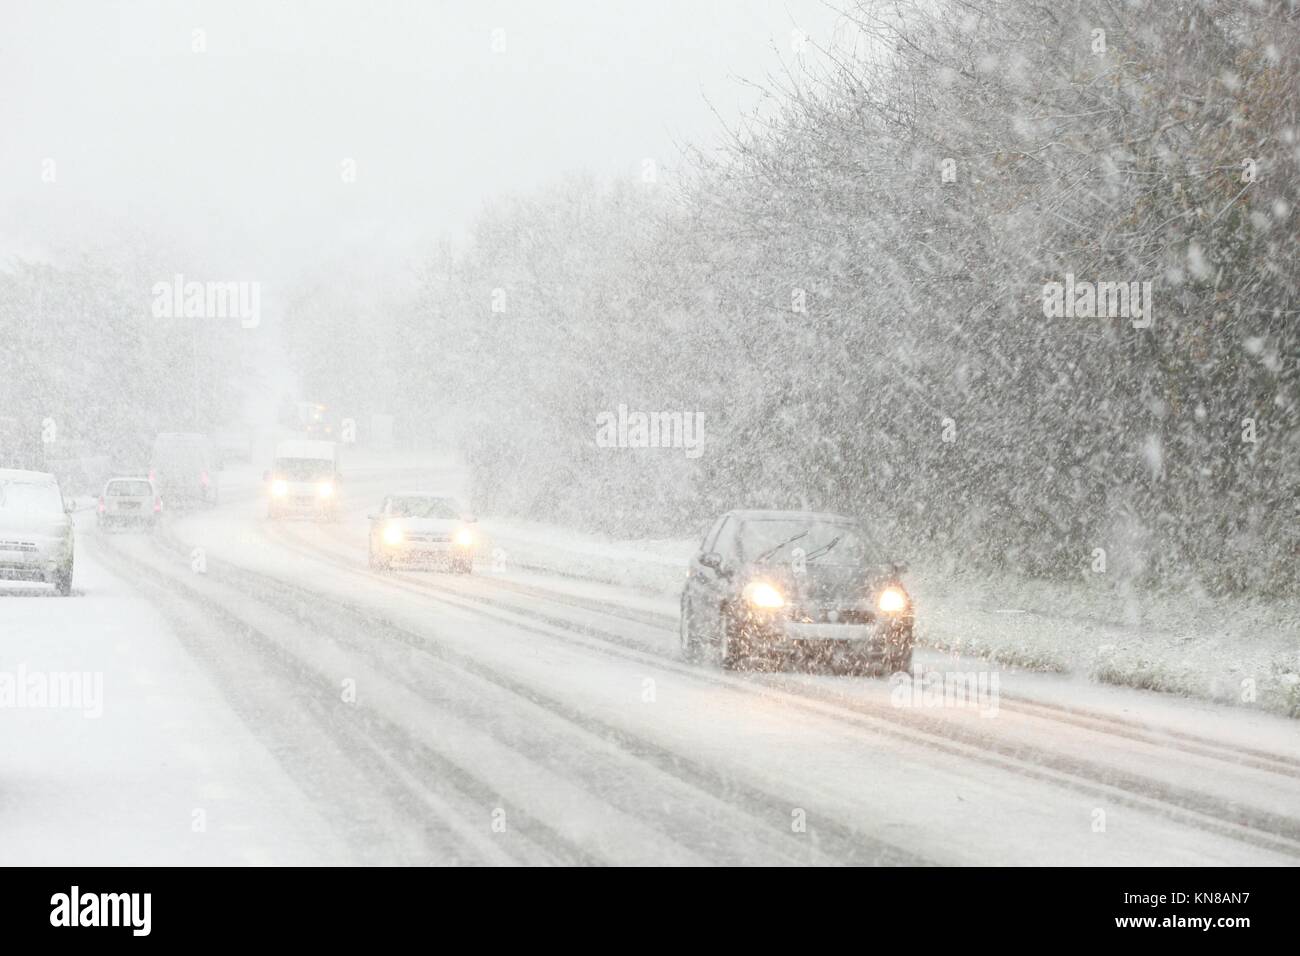 Voitures roulant dans de fortes chutes de neige en hiver, blanc dehors, conditions de blizzard, hastings, est sussex, royaume-uni Banque D'Images